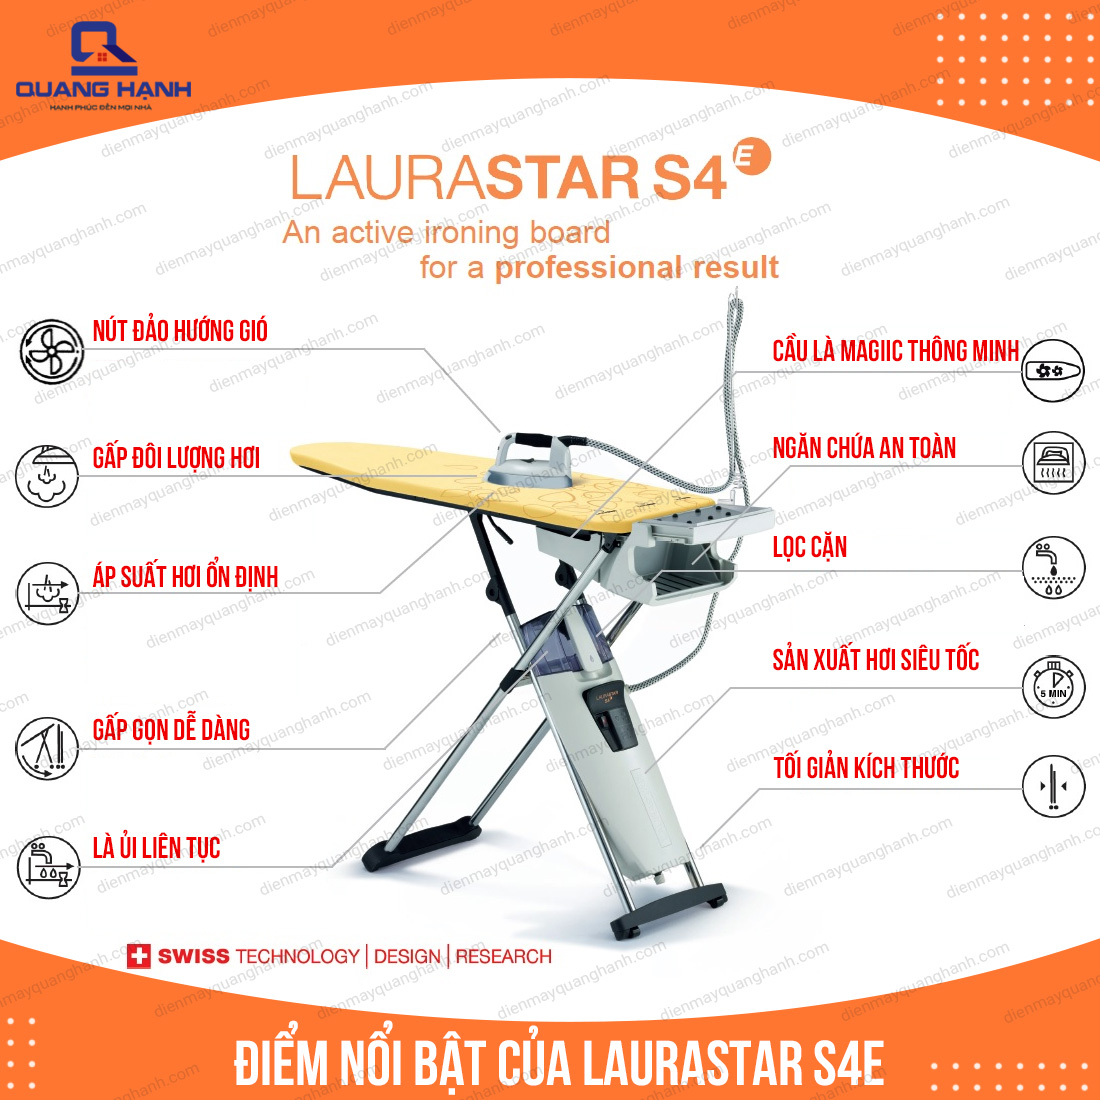 cấu tạo, đặc điểm nổi bật của Laurastar S4E